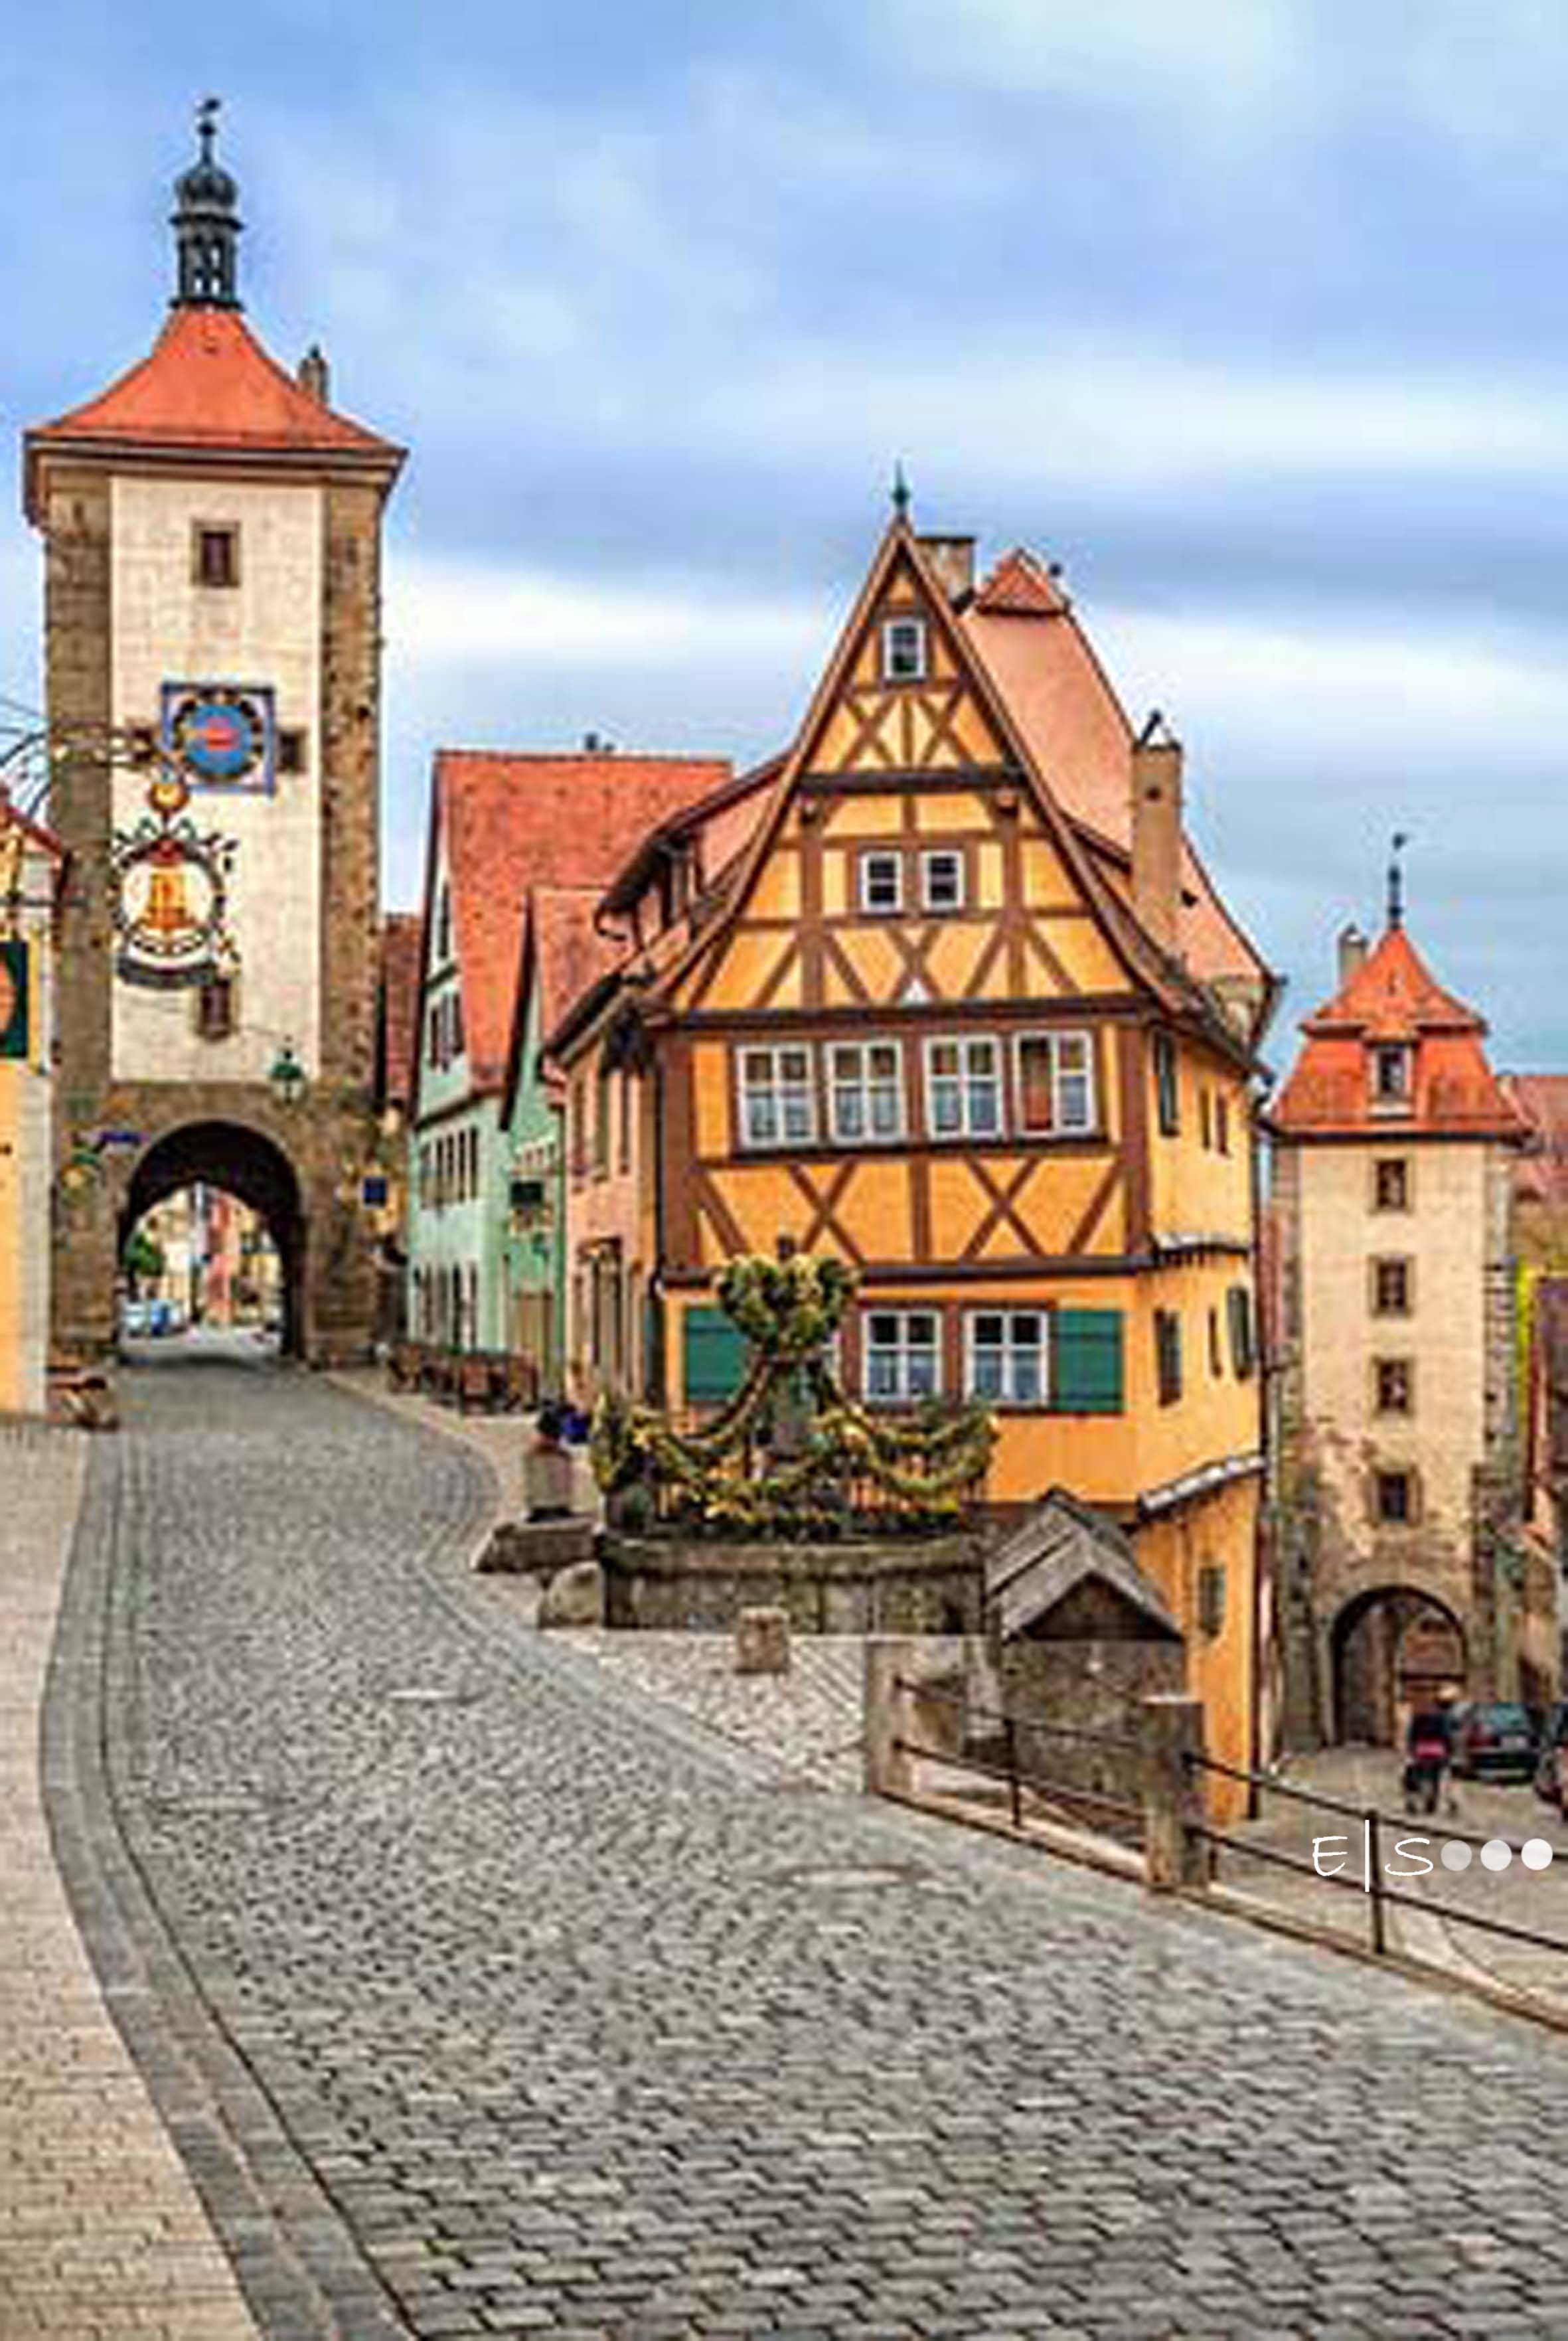 Rothenburg ob der Tauber, Germany - 15 Hidden Gems in Europe | Best ...